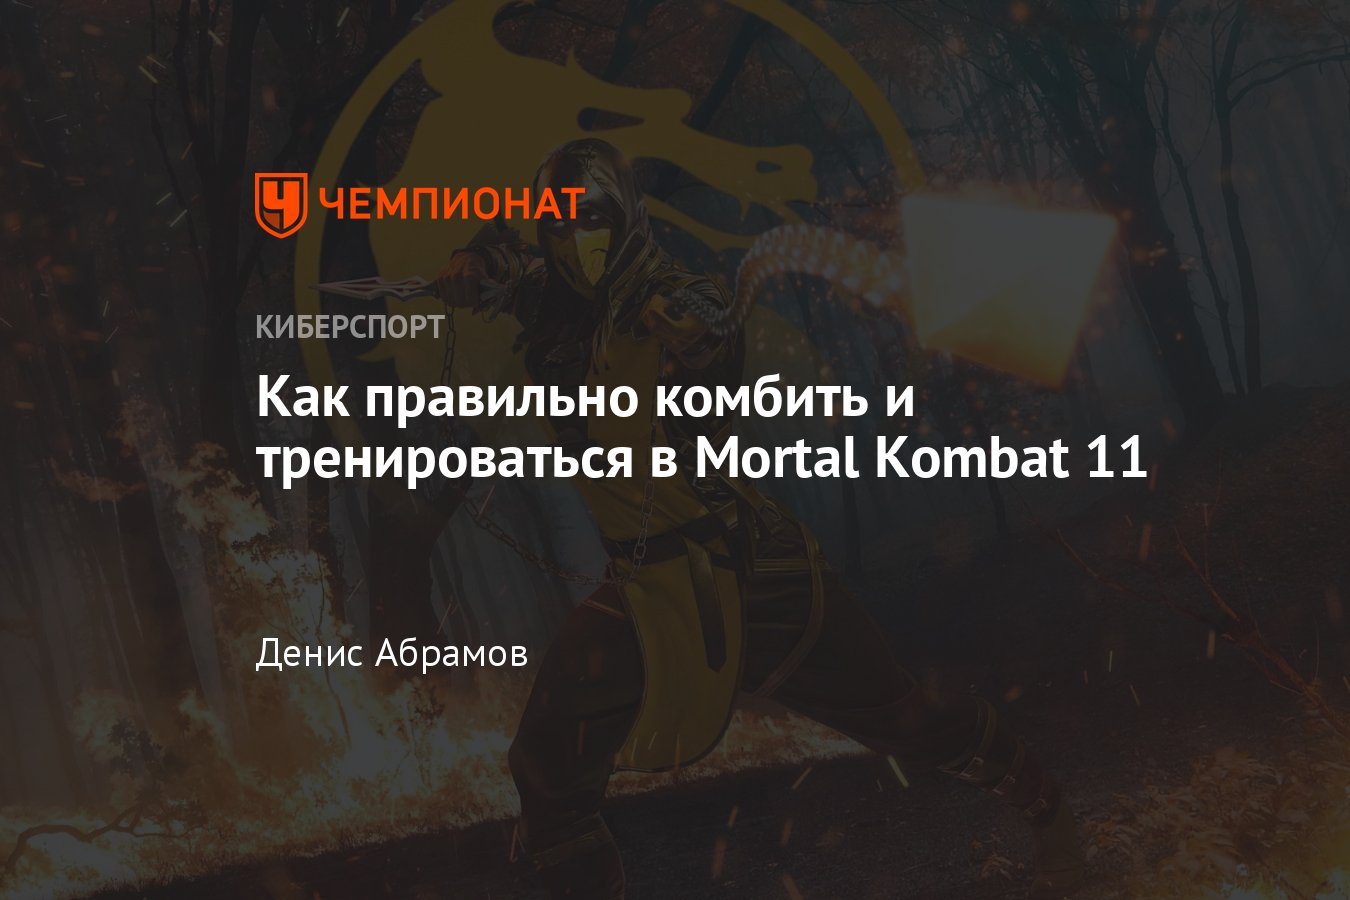 Как выполнять X-Ray удары на геймпаде XBOX? - Форум Mortal Kombat ()